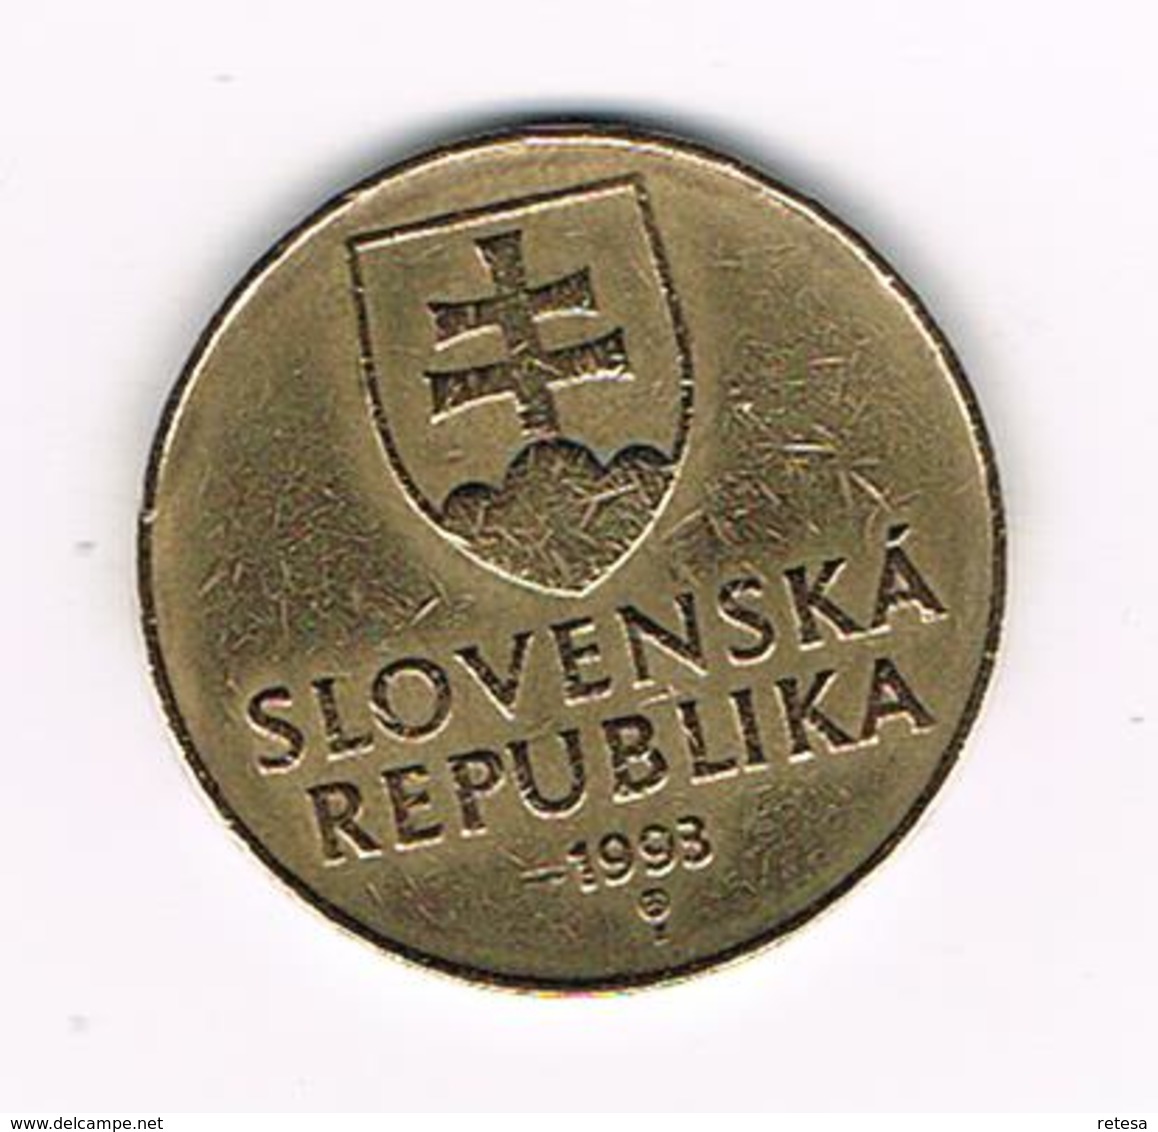 &-  SLOWAKIJE  10  KORUNA  1993 - Slovakia